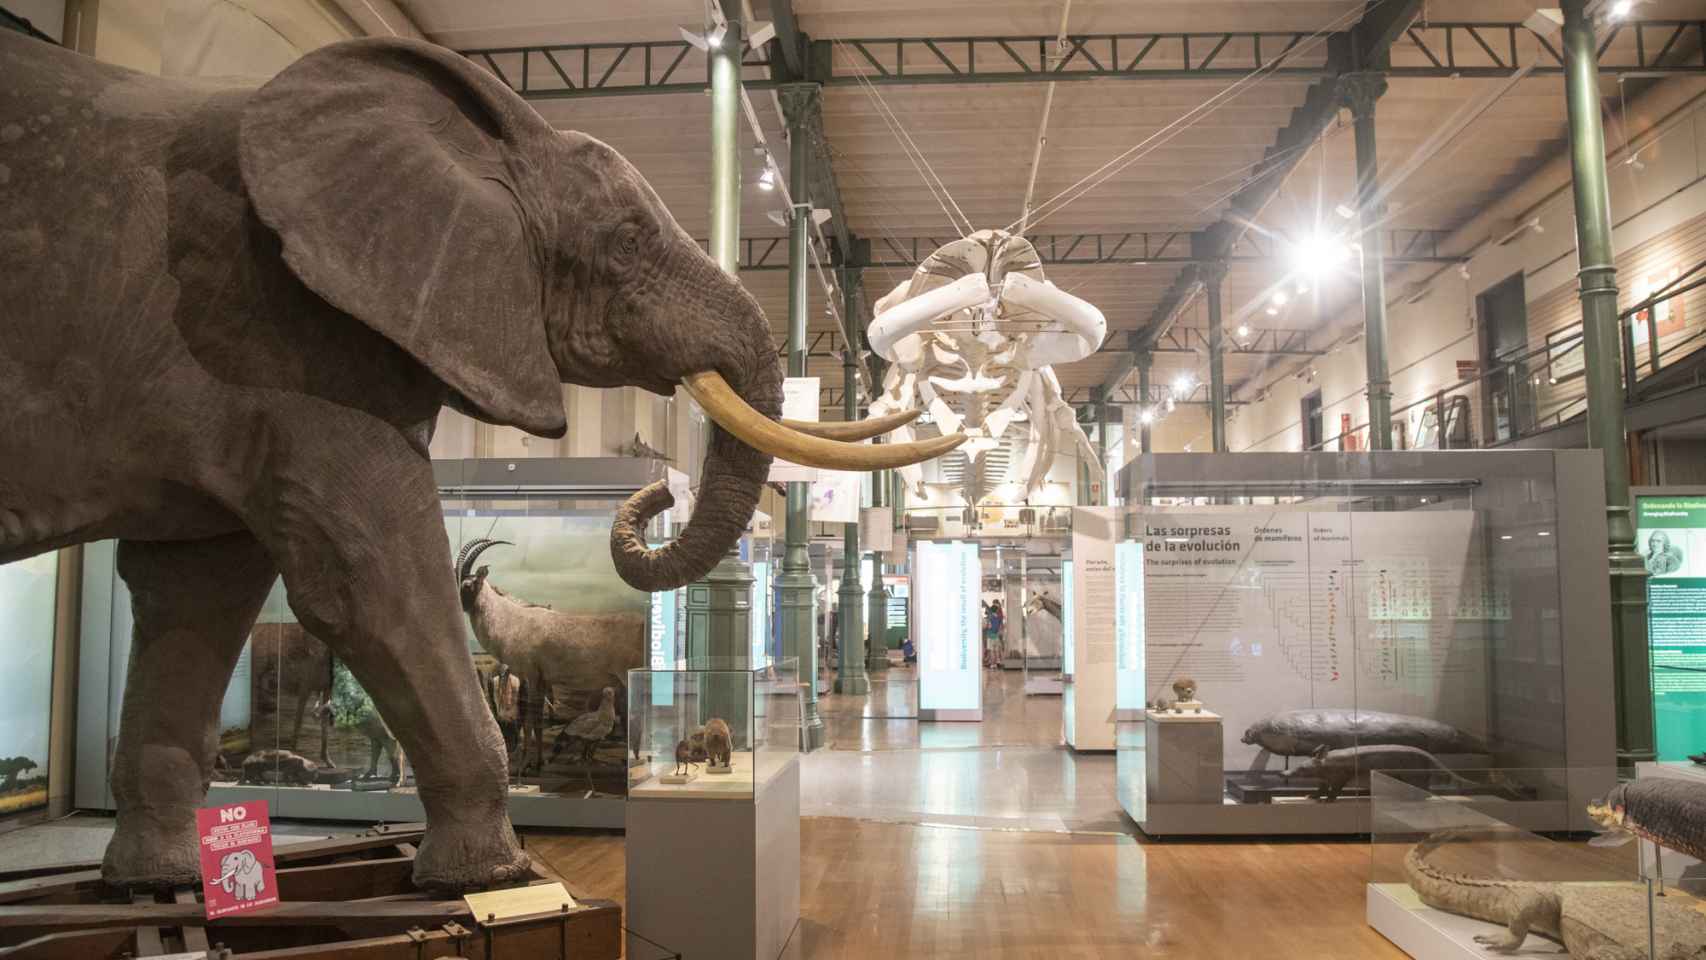 El elefante africano naturalizado domina el espacio central del museo.